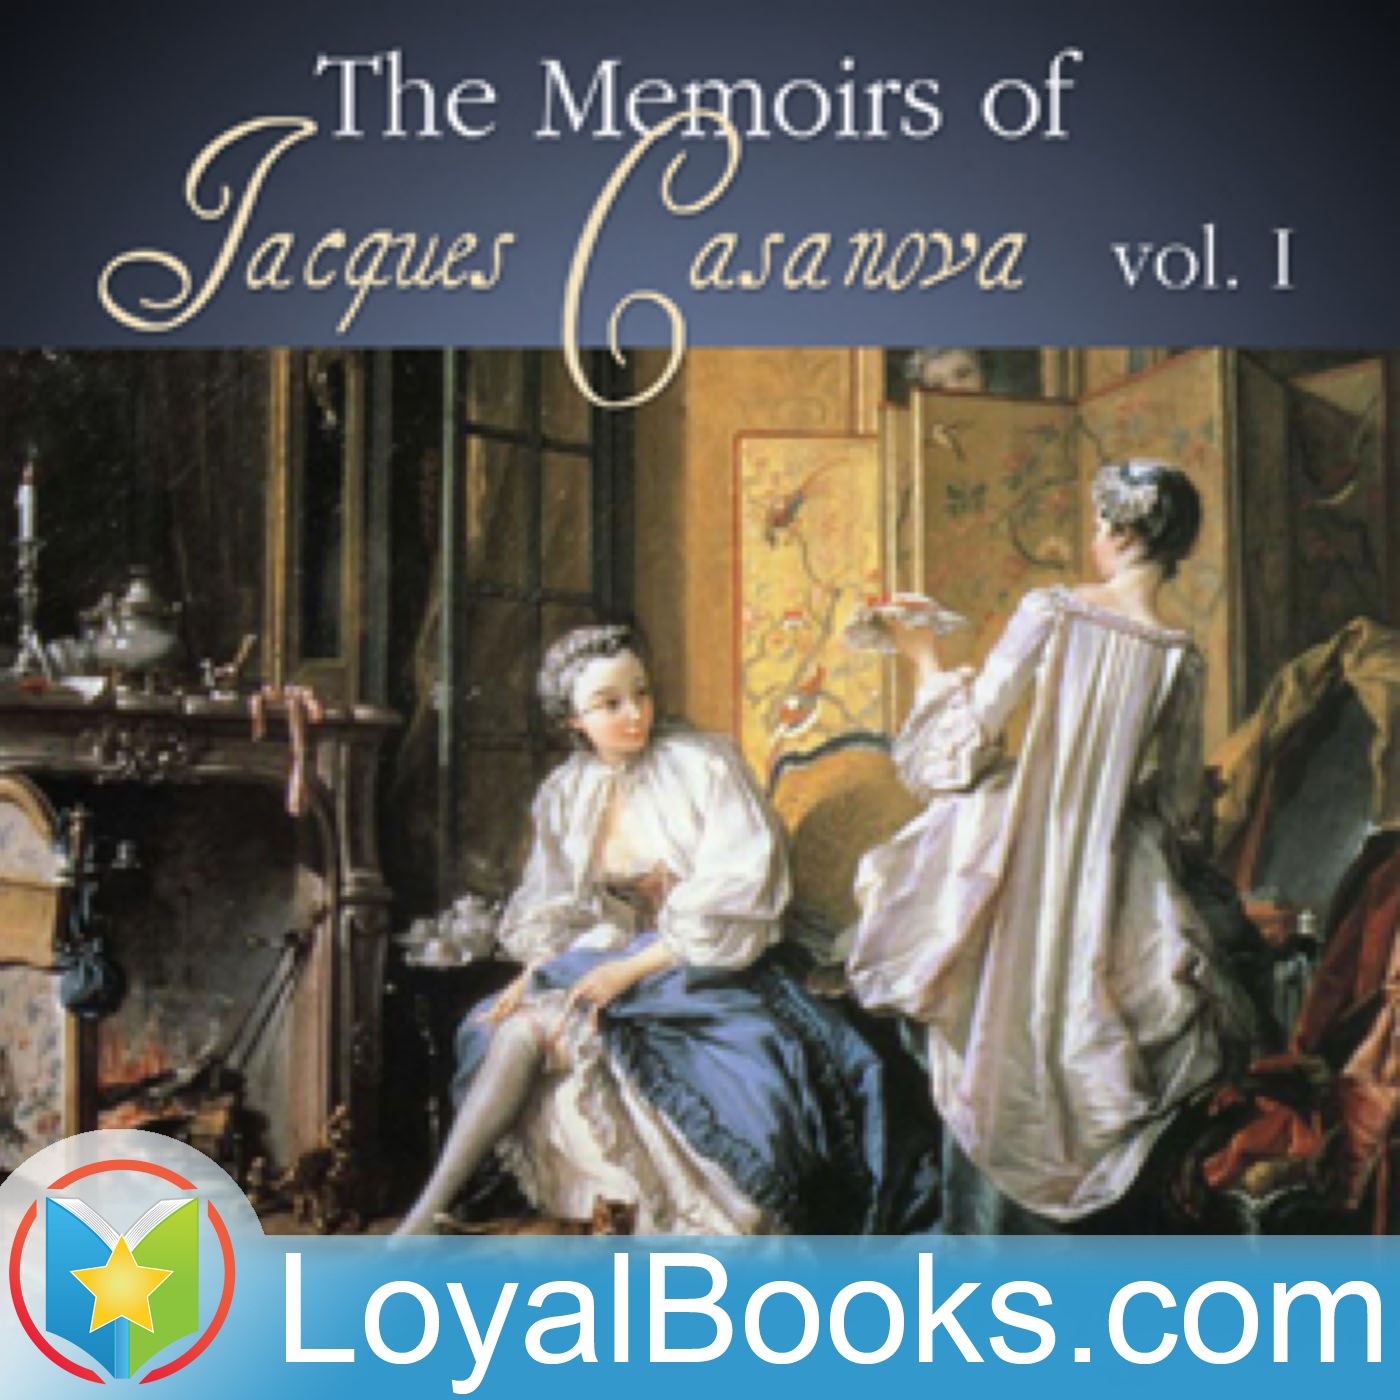 The Memoirs of Jacques Casanova by Giacomo Casanova